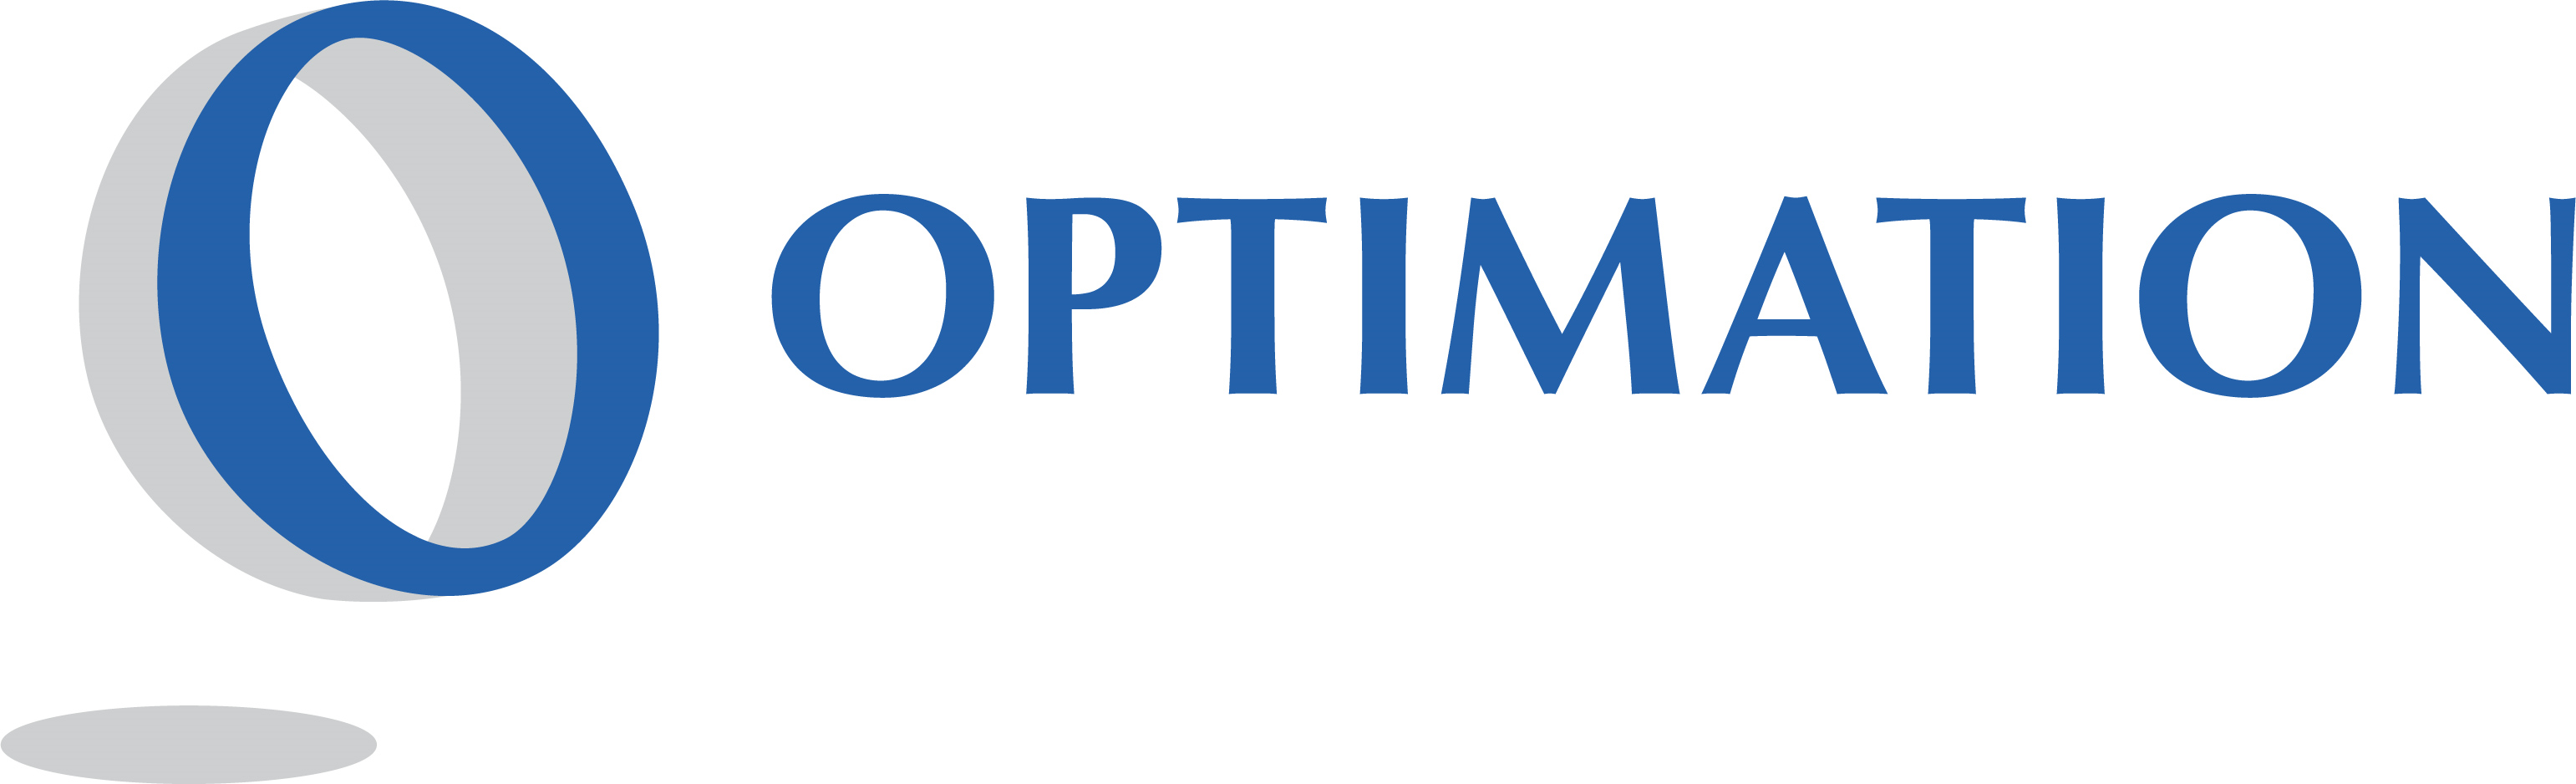 Optimation Company Logo